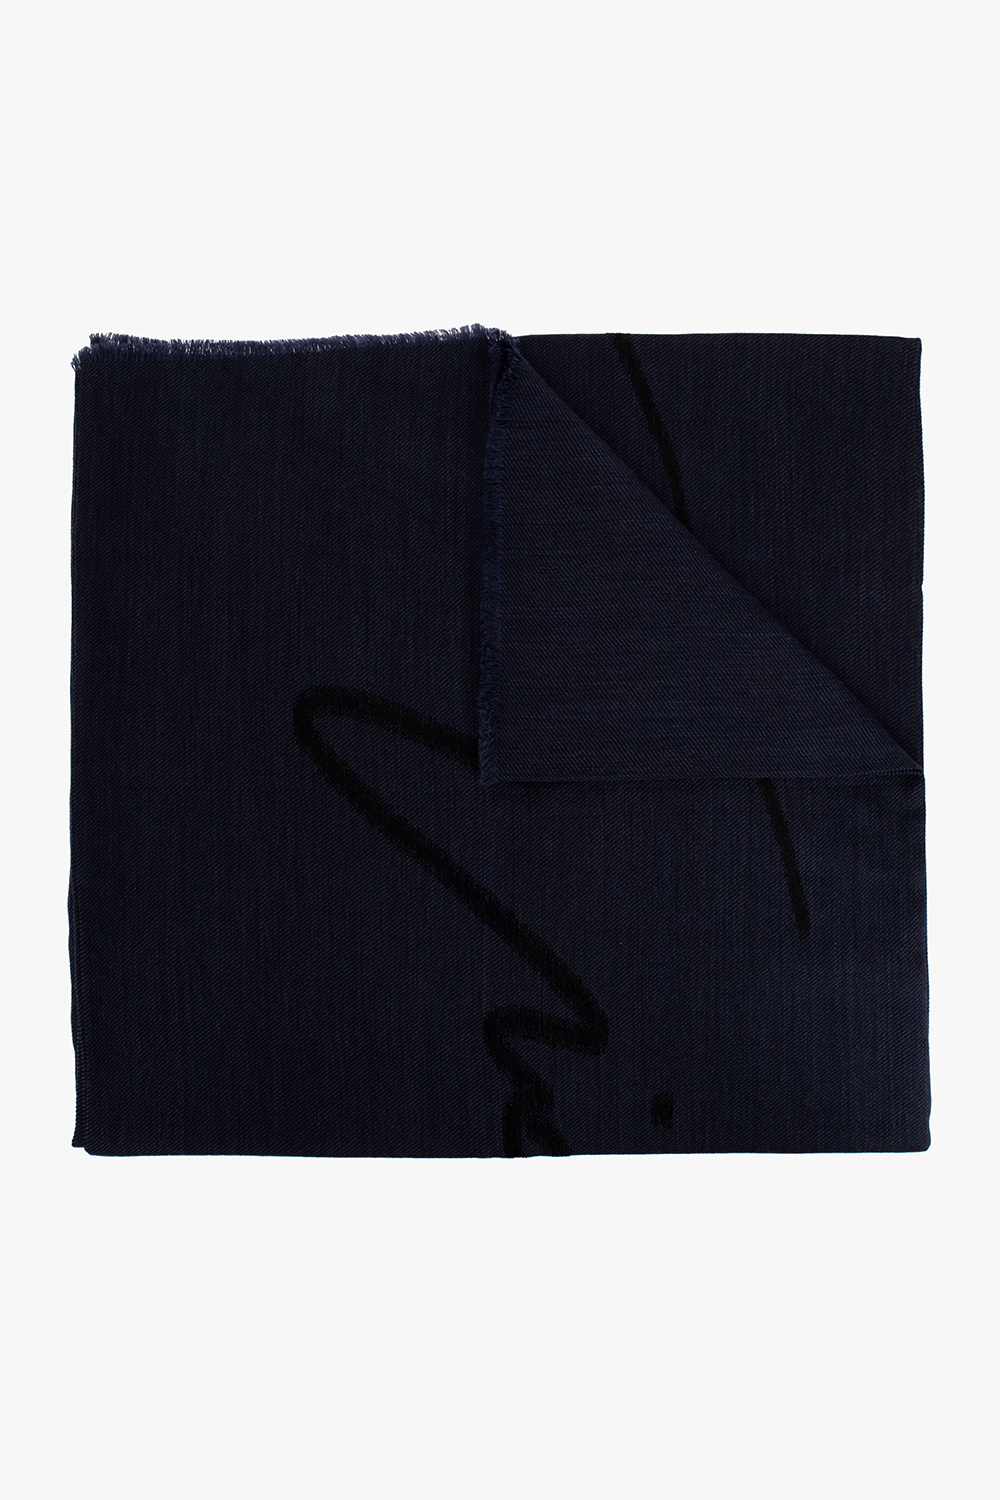 Giorgio armani Badbyxor Wool scarf with logo